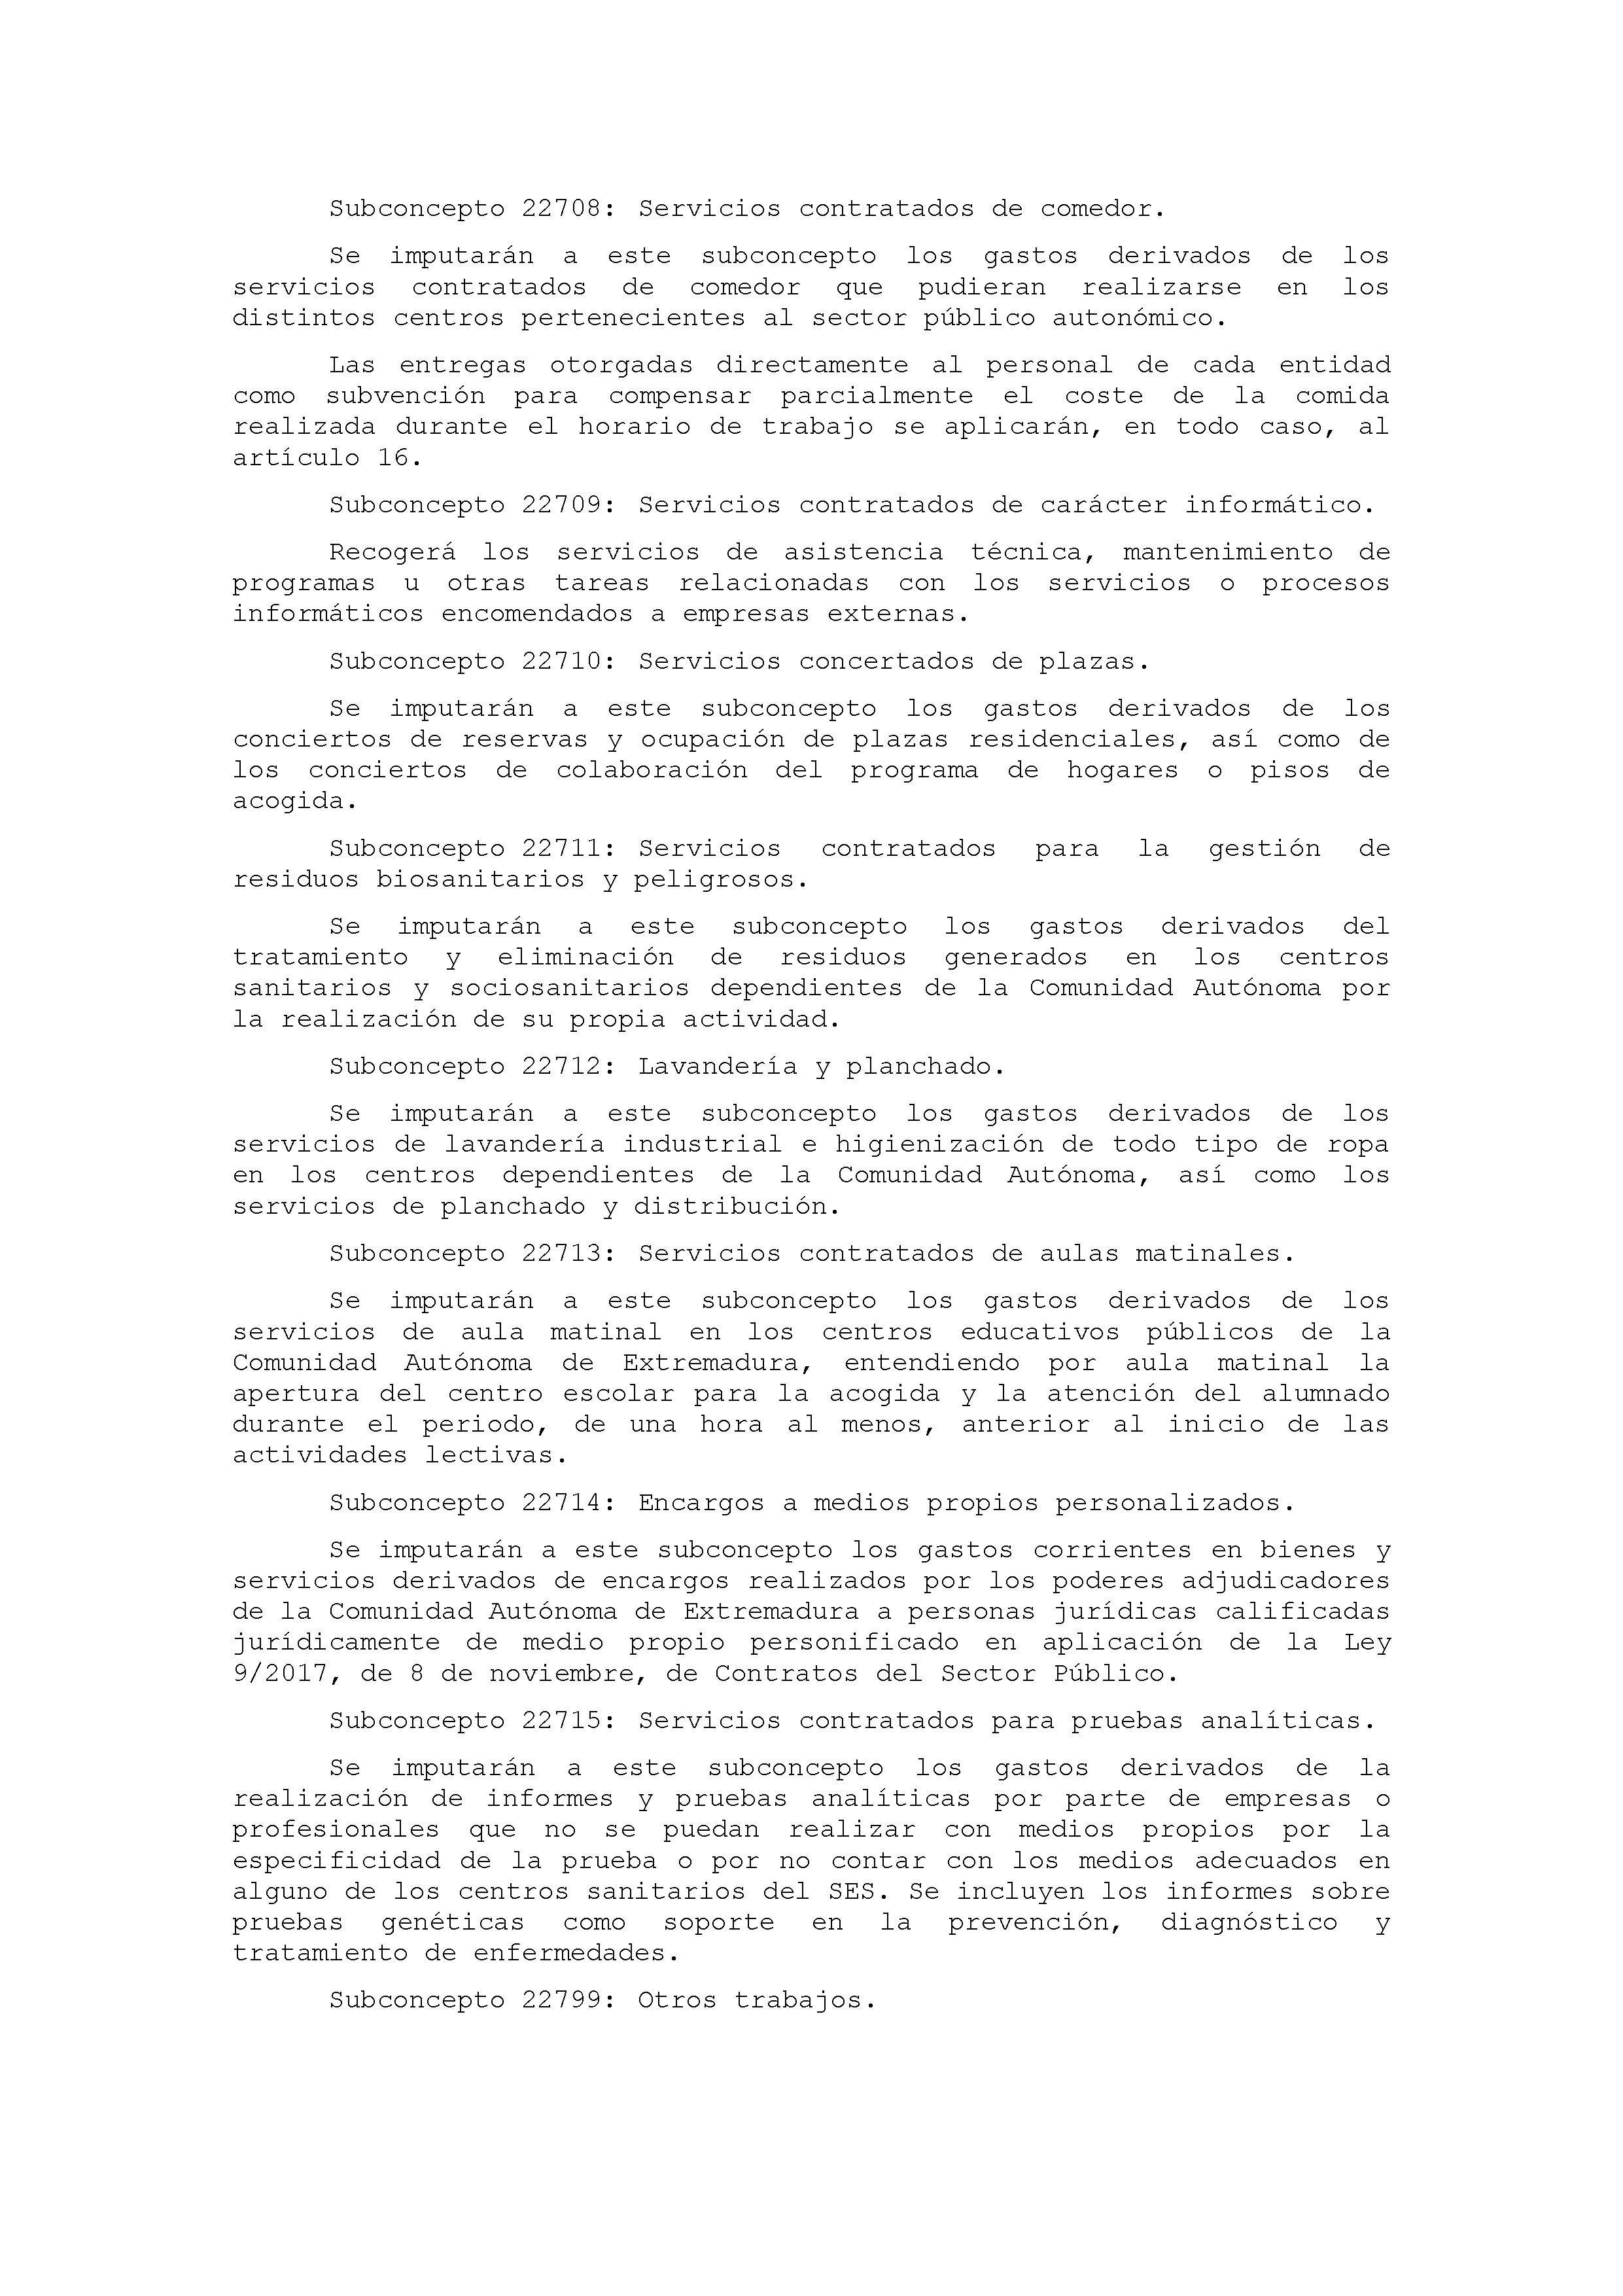 ANEXO IX CÓDIGO DE LA CLASIFICACIÓN ECONÓMICA DE LOS GASTOS PÚBLICOS Pag 23